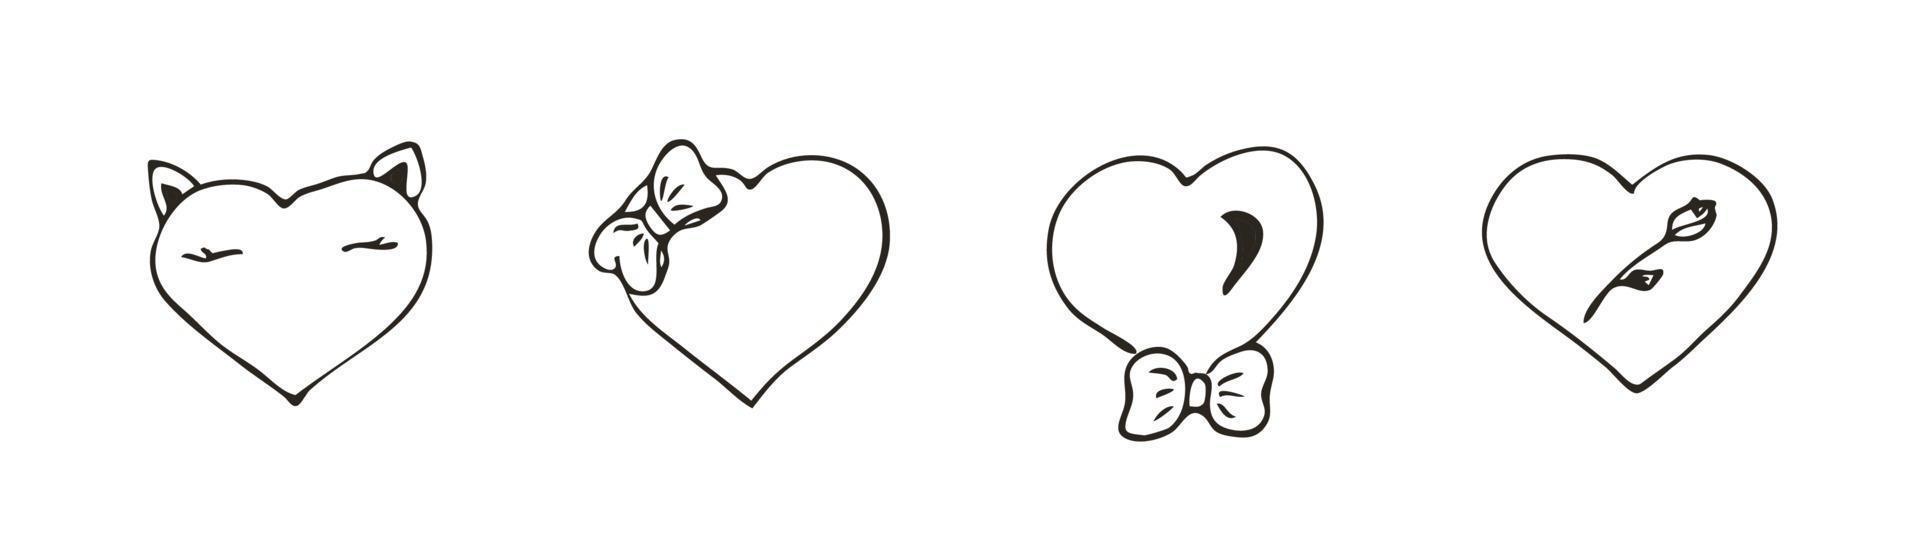 Satz von Doodle-Herz-Symbol. Liebessymbol mit Bogen und Rose. niedliche handgezeichnete Vektorgrafik isoliert auf weißem Hintergrund. einfaches Zeichen im Umrissstil. Kunstskizzenmuster vektor